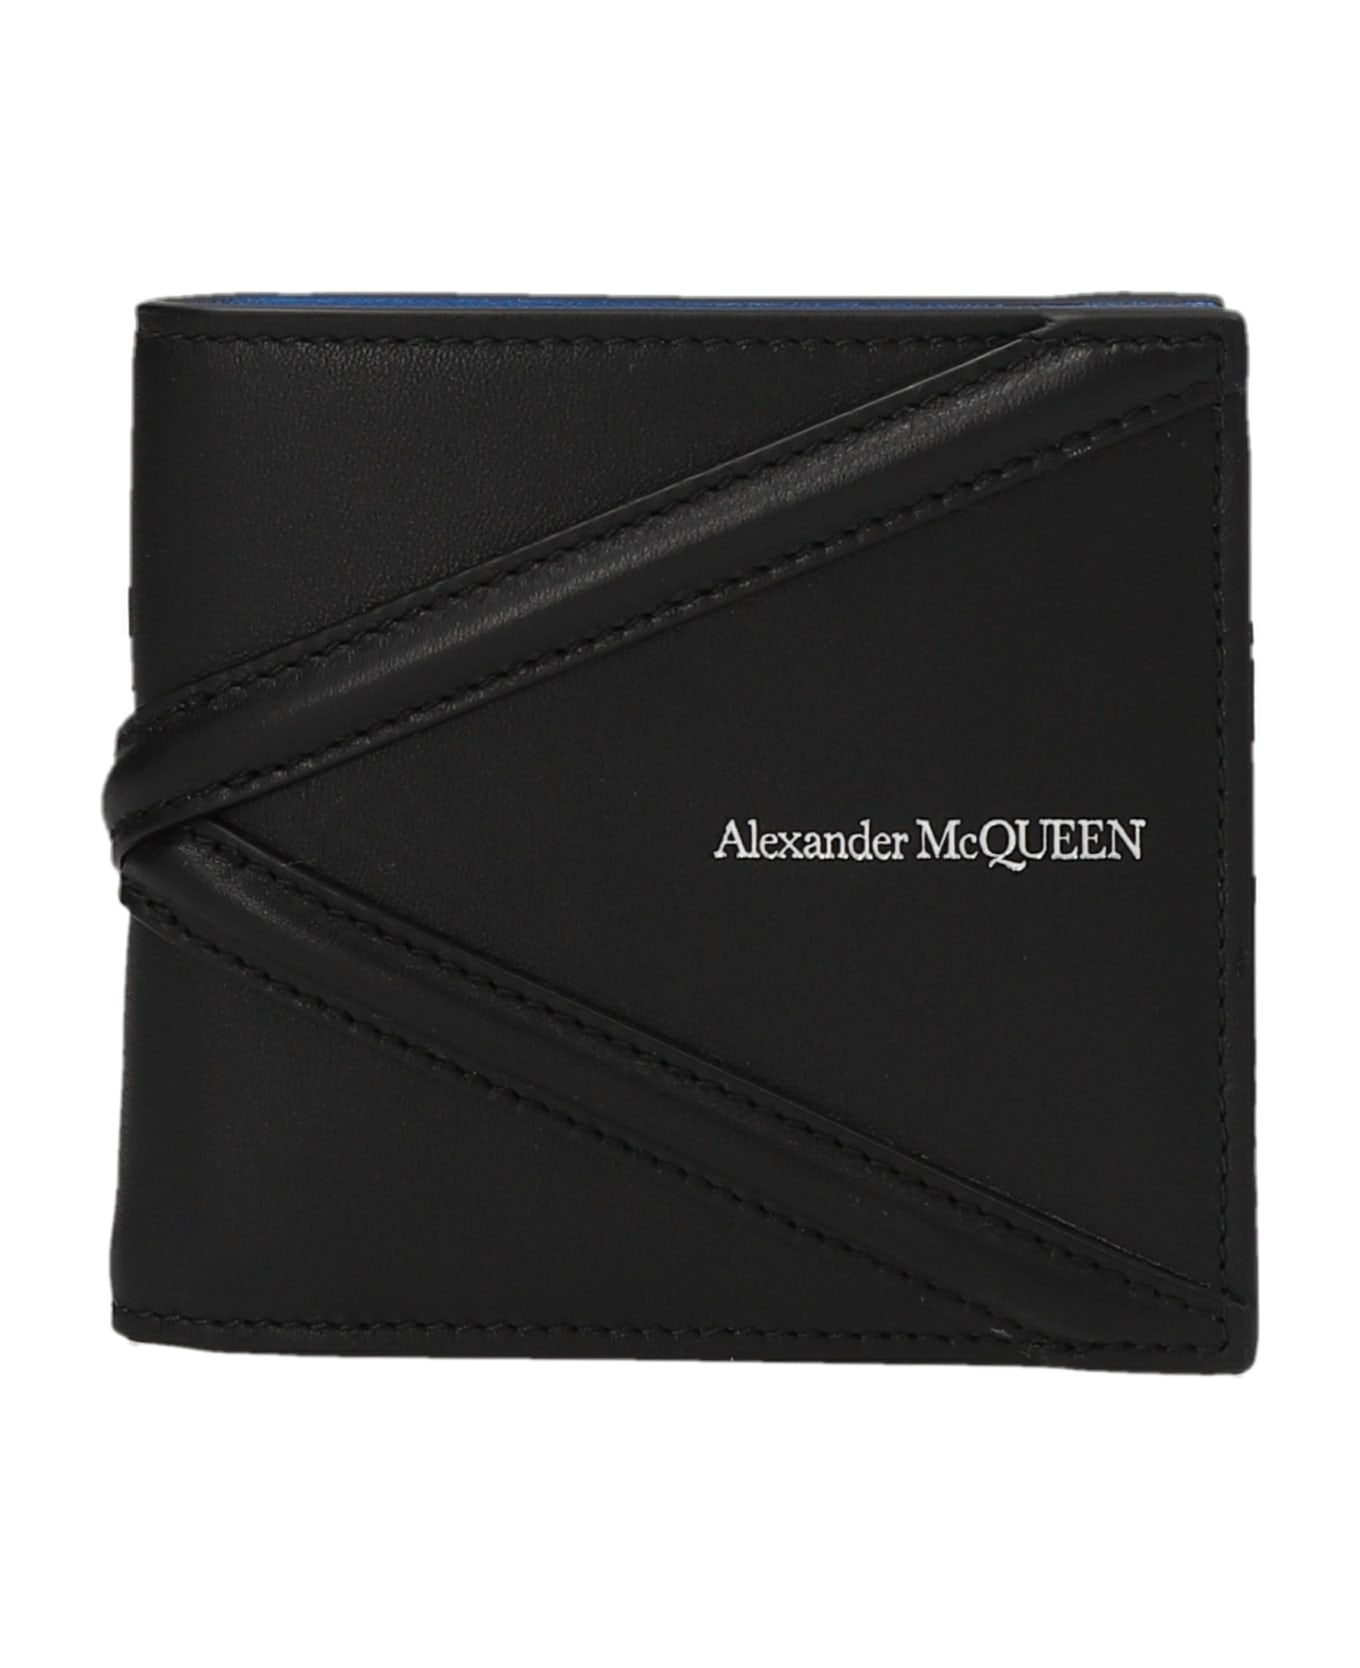 Alexander McQueen 'the Harness' Wallet - Black   財布